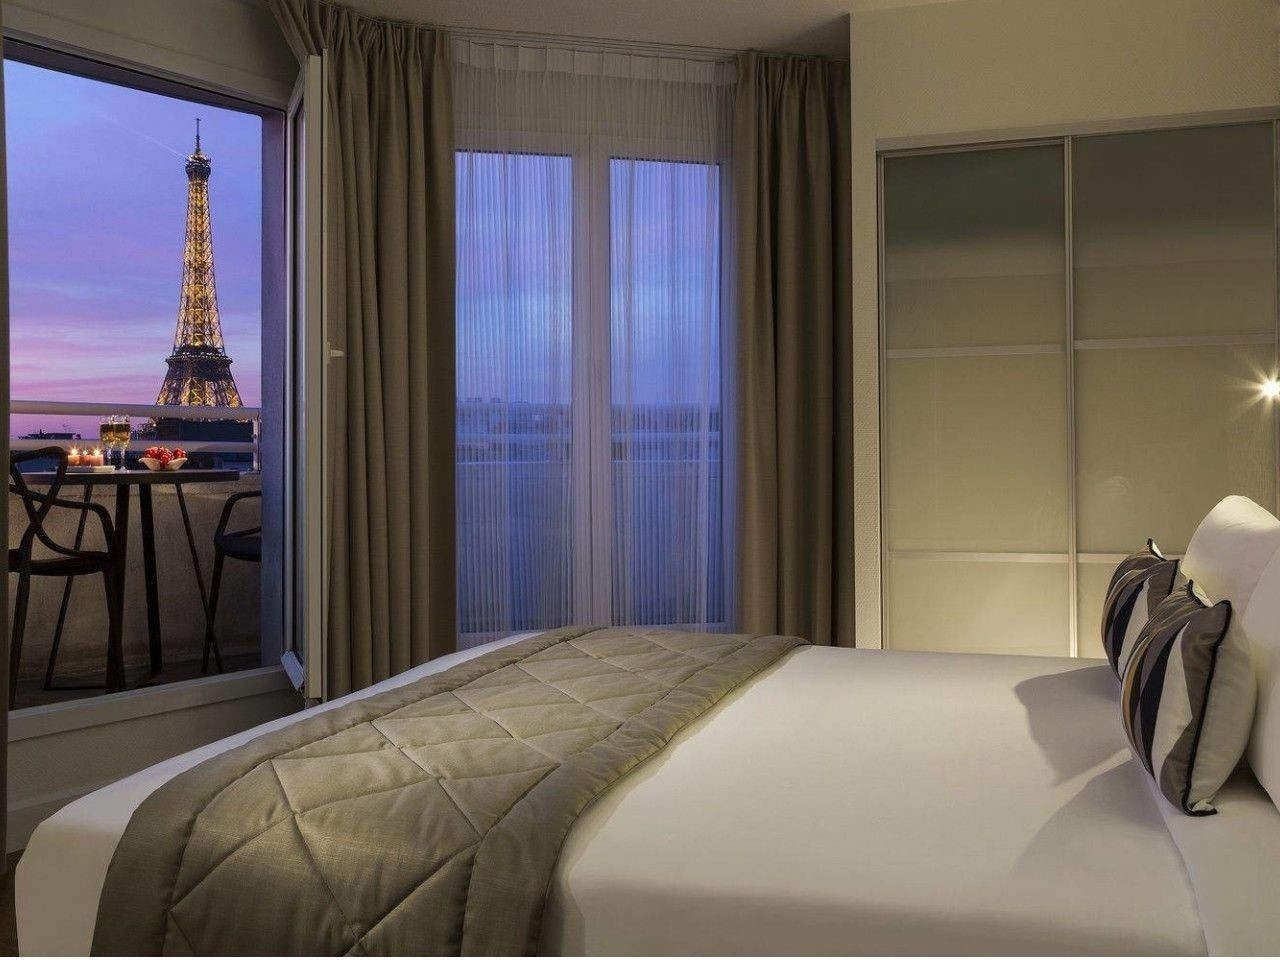 Dove dormire a Parigi, i quartieri e gli hotel migliori